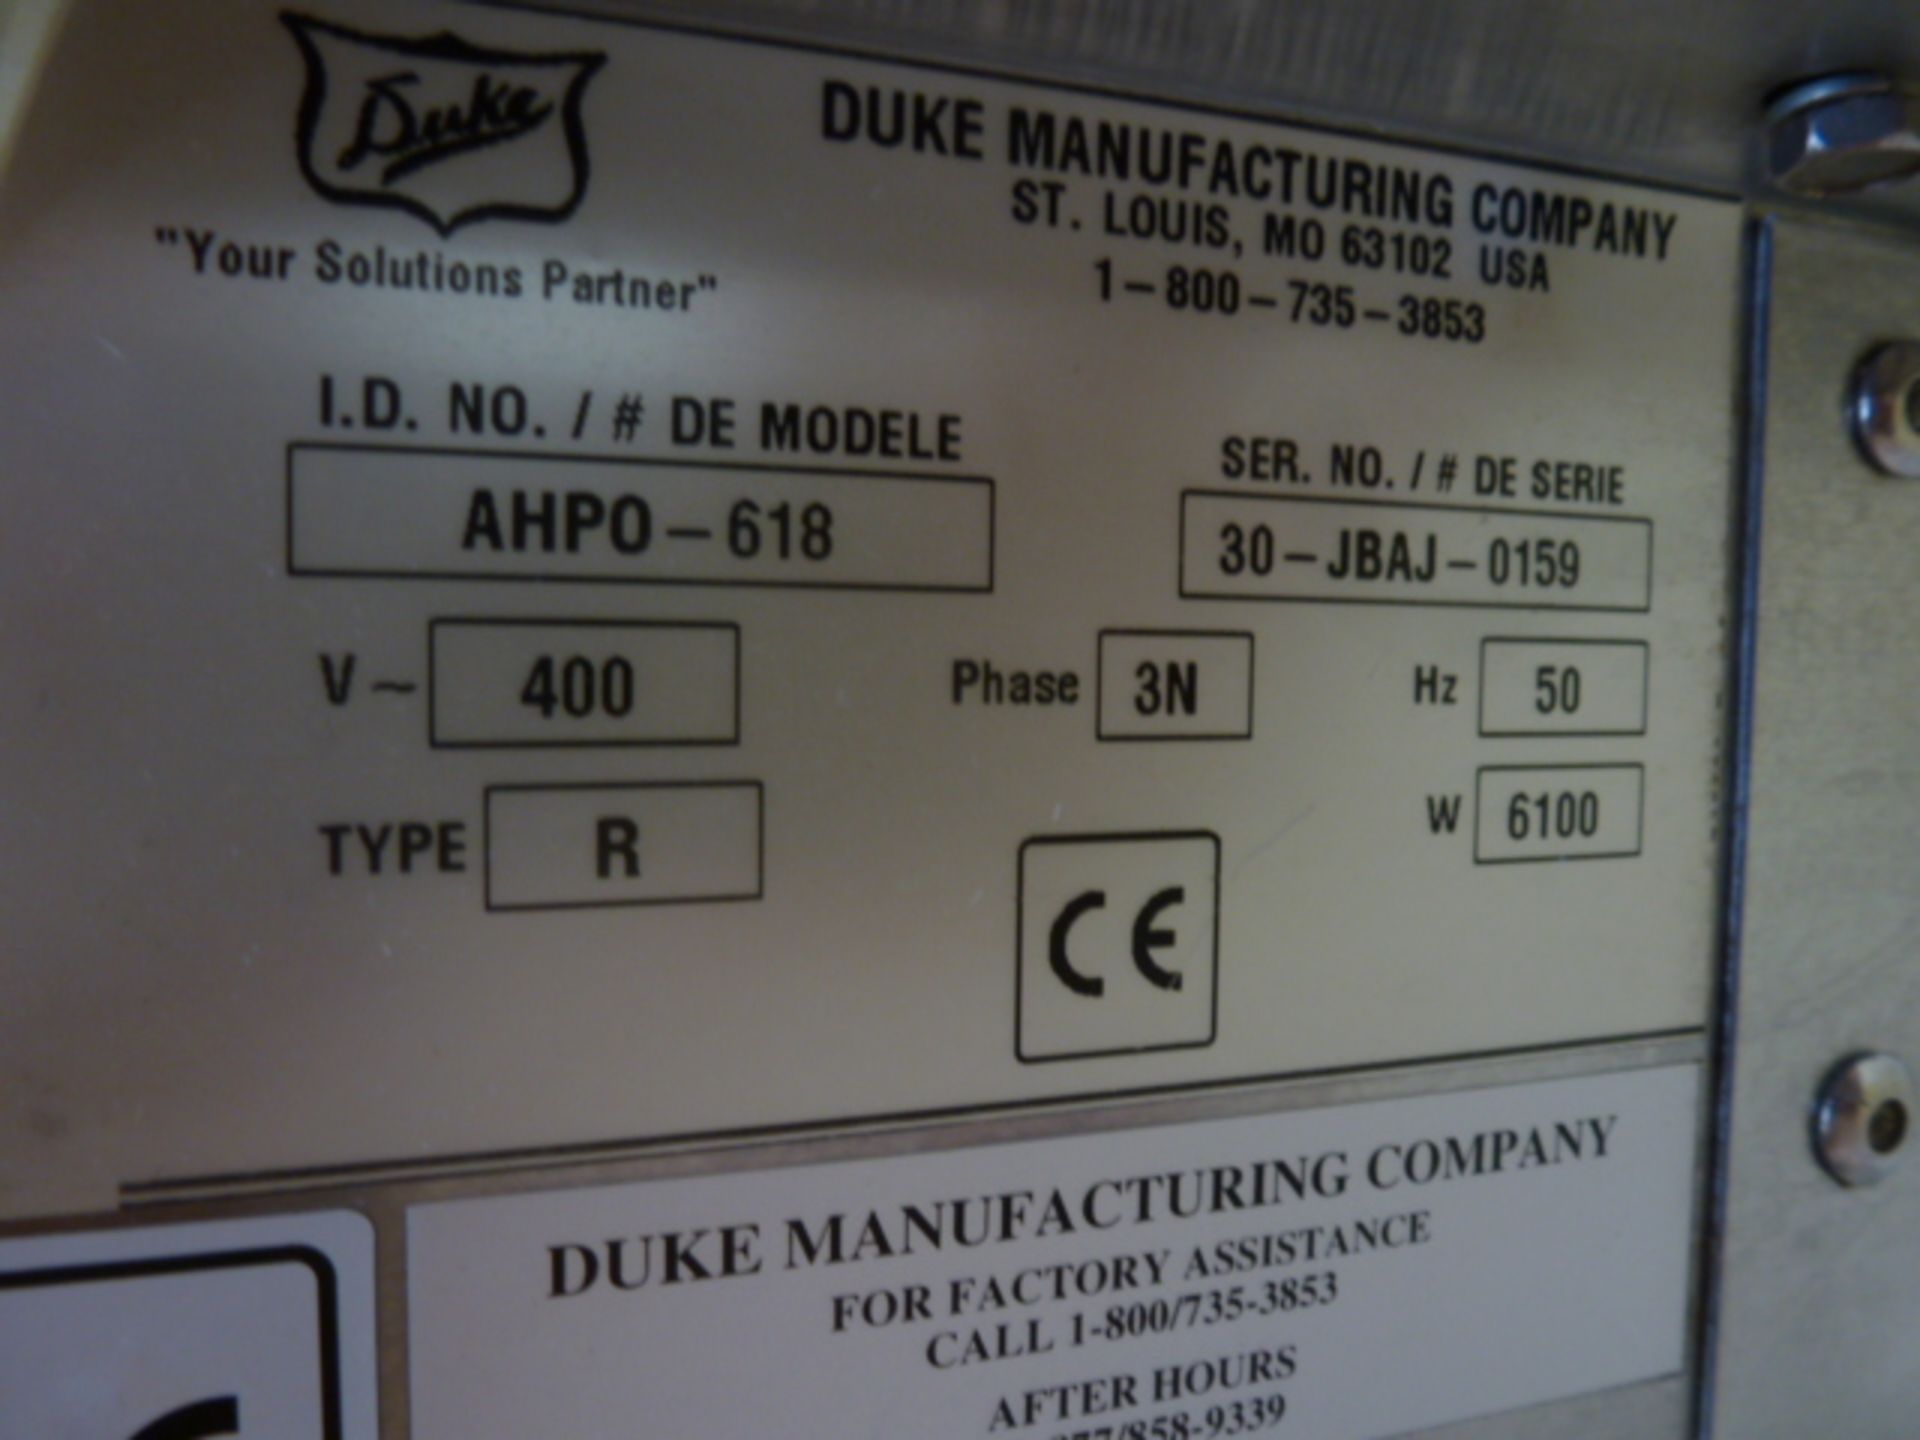 Duke Stainless Steel Commercial 3 Rack Bakery Oven, Over 9 Rack Proover. Model AHPO-618, S/N 30- - Image 8 of 9